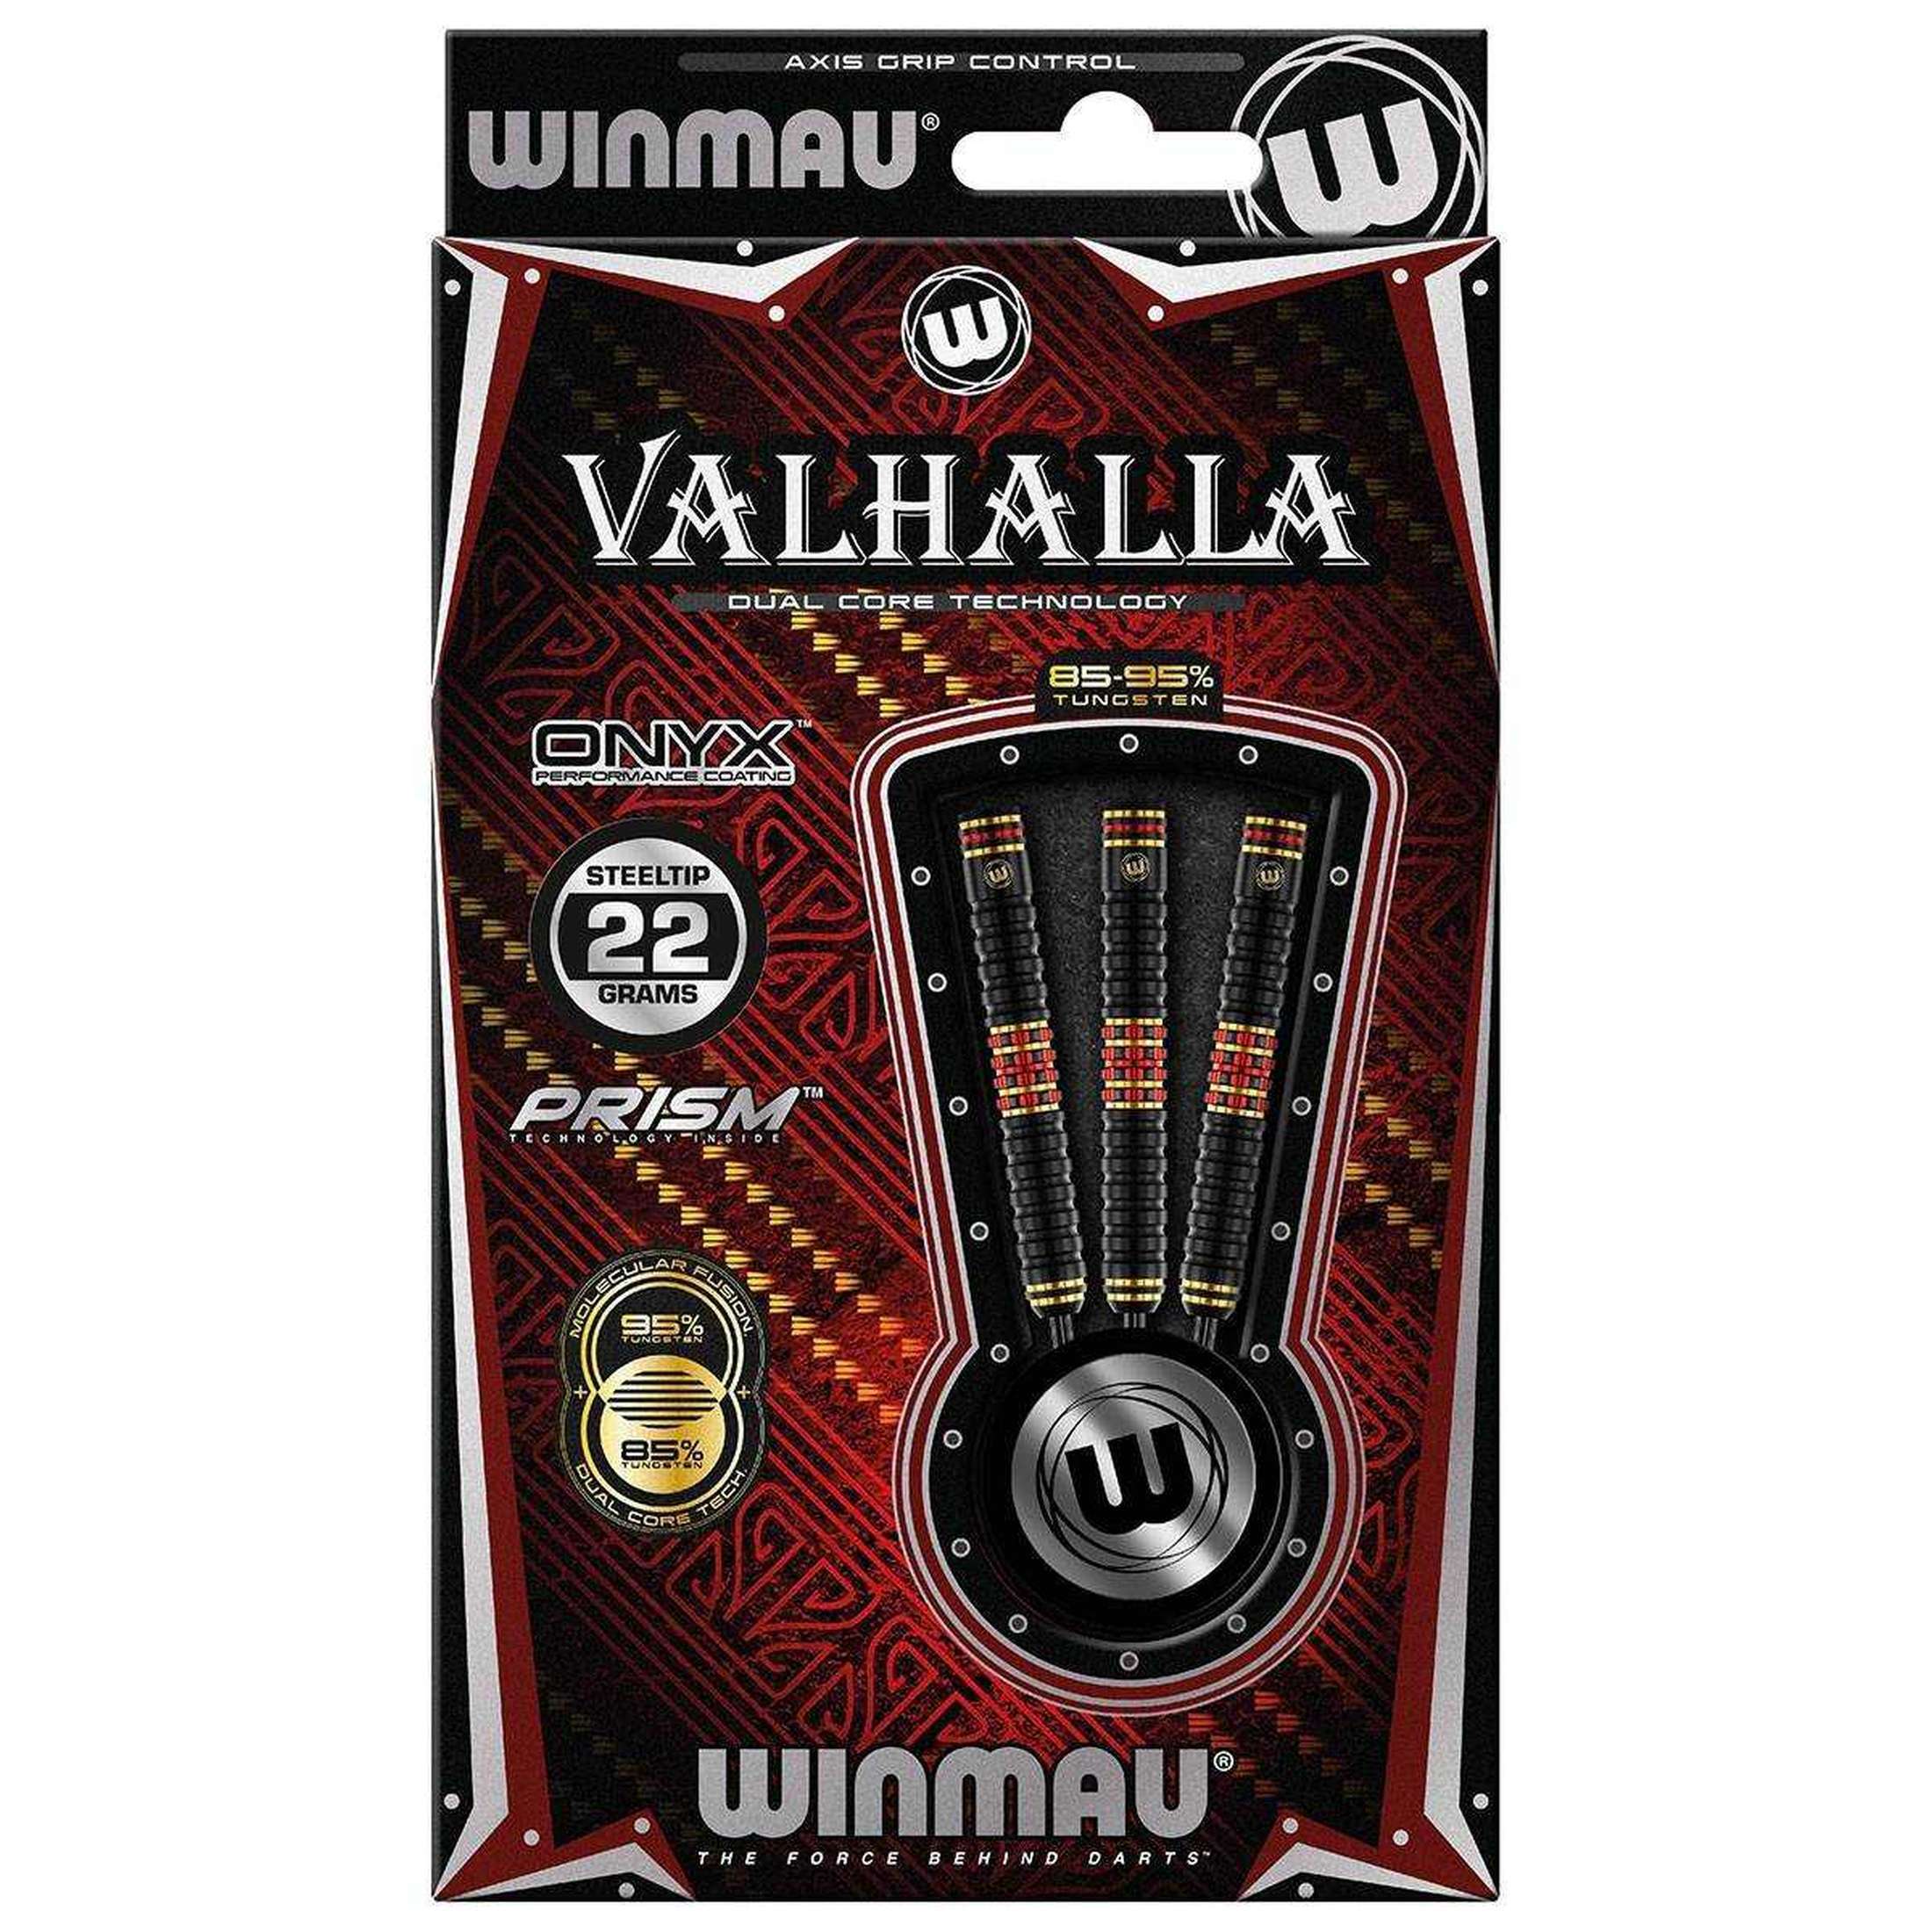 Winmau Valhalla 95% Tungsten/85% Tungsten Steeldarts-3